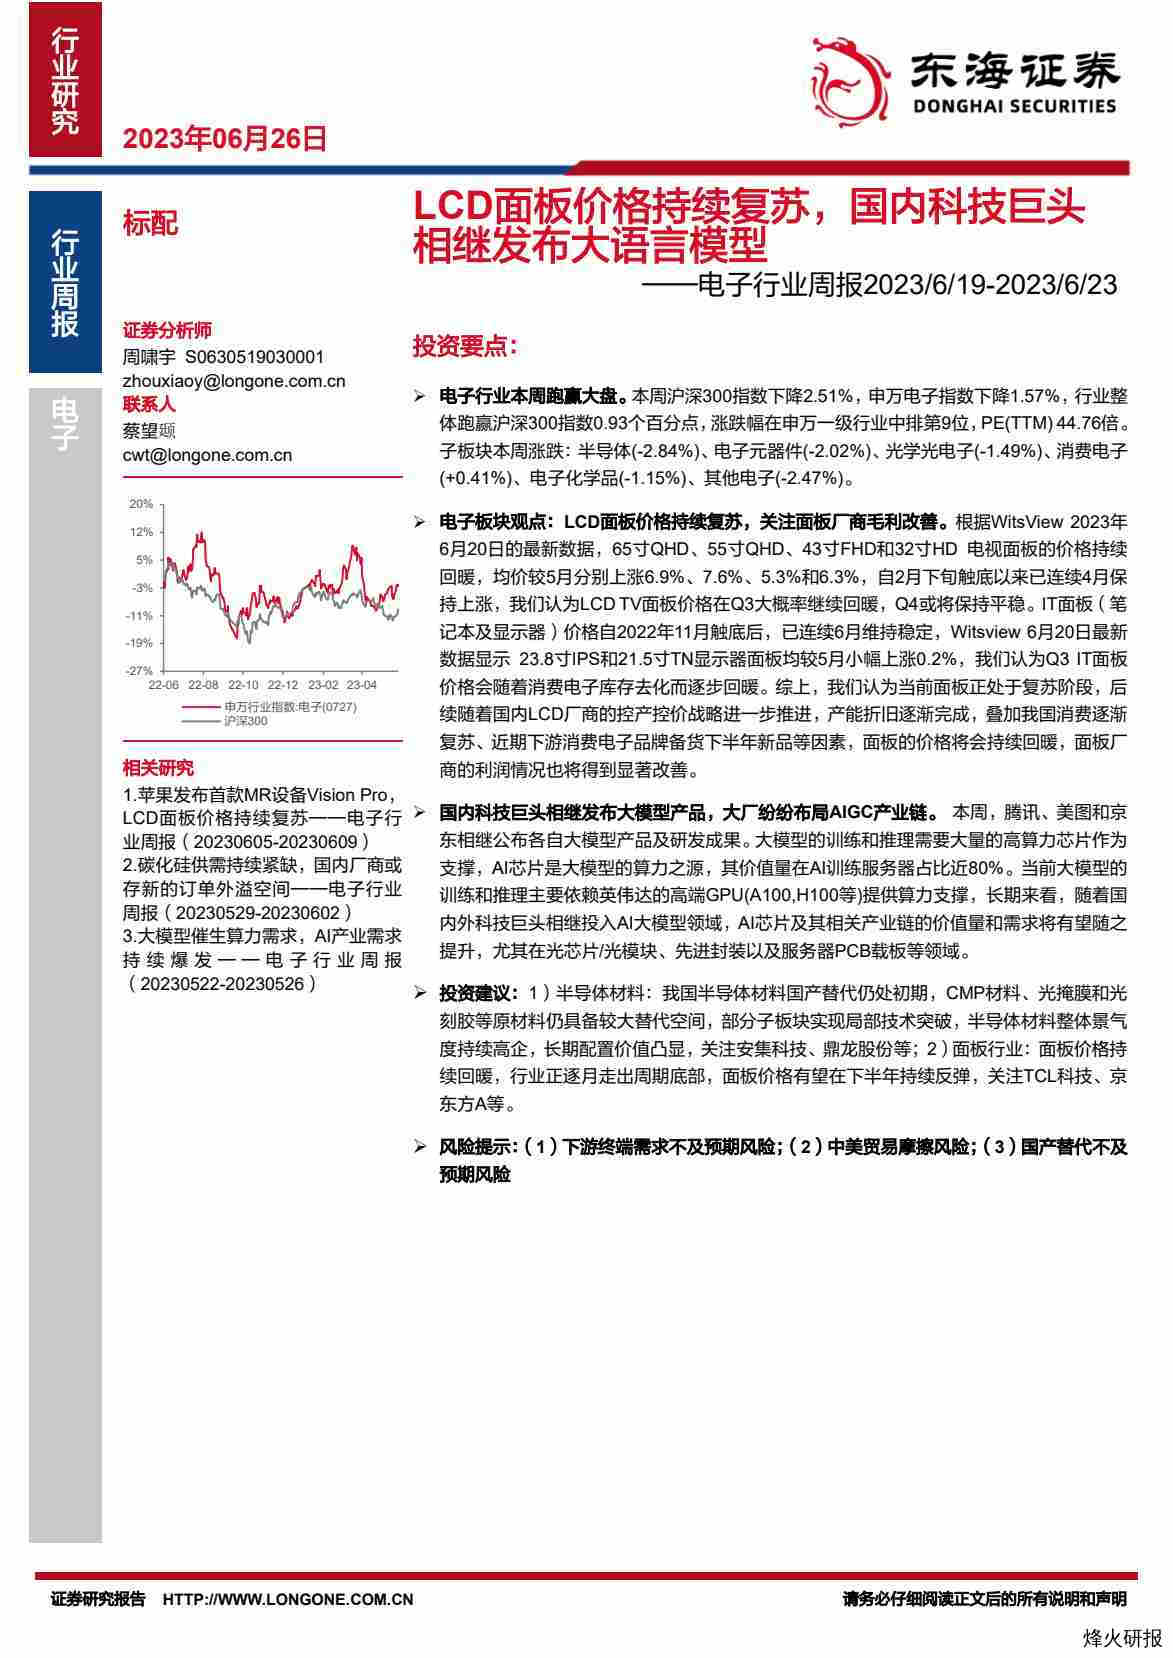 【东海证券】电子行业周报：LCD面板价格持续复苏，国内科技巨头相继发布大语言模型.pdf-第一页